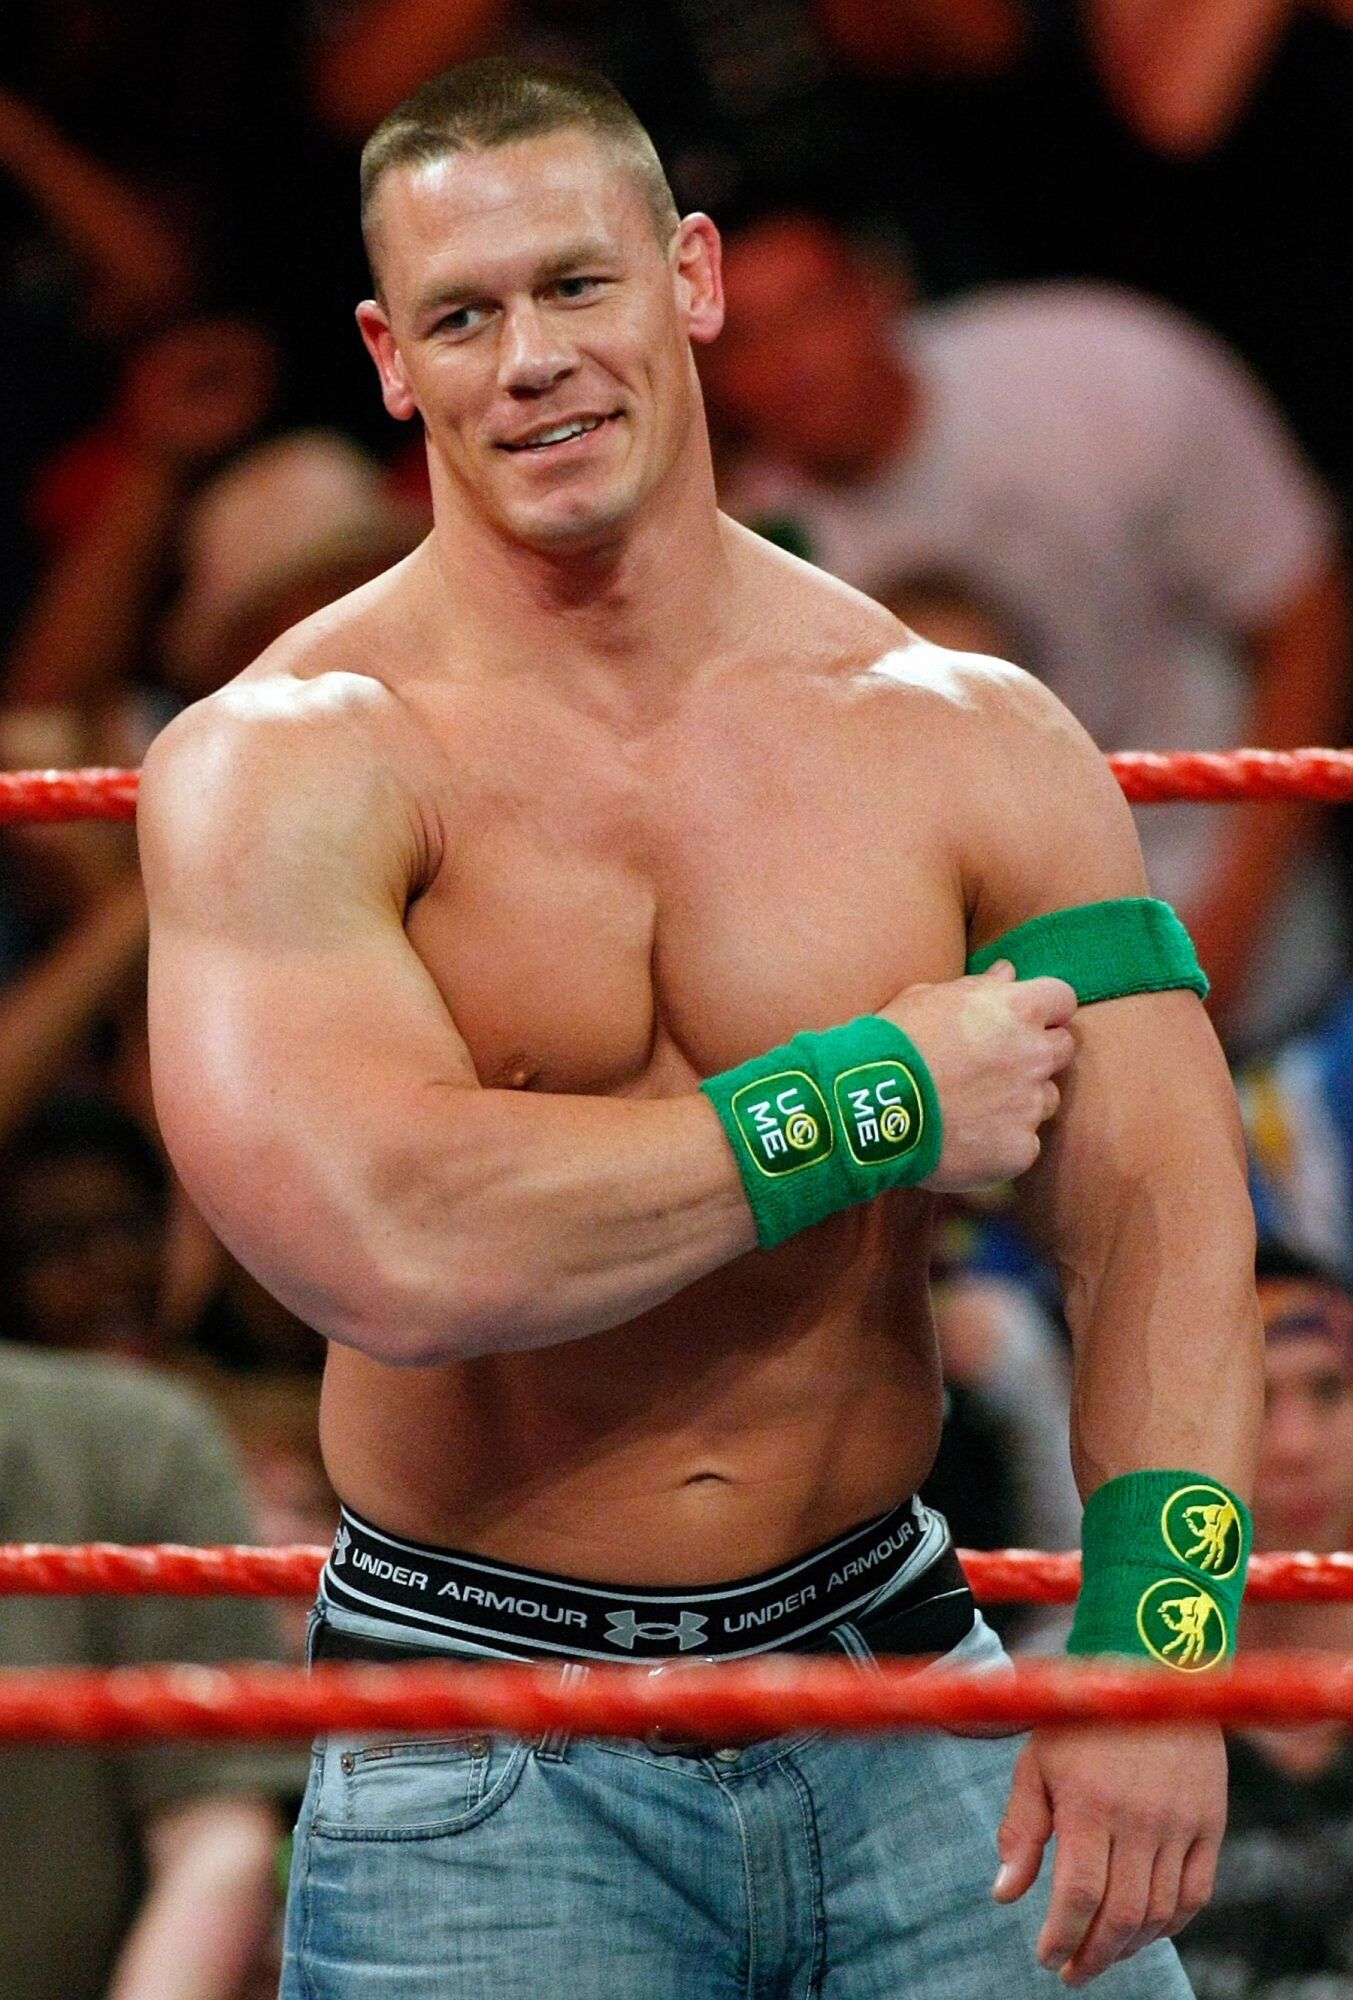 John Cena Says He's Gotten an 'Accidental Boner' While Wrestling